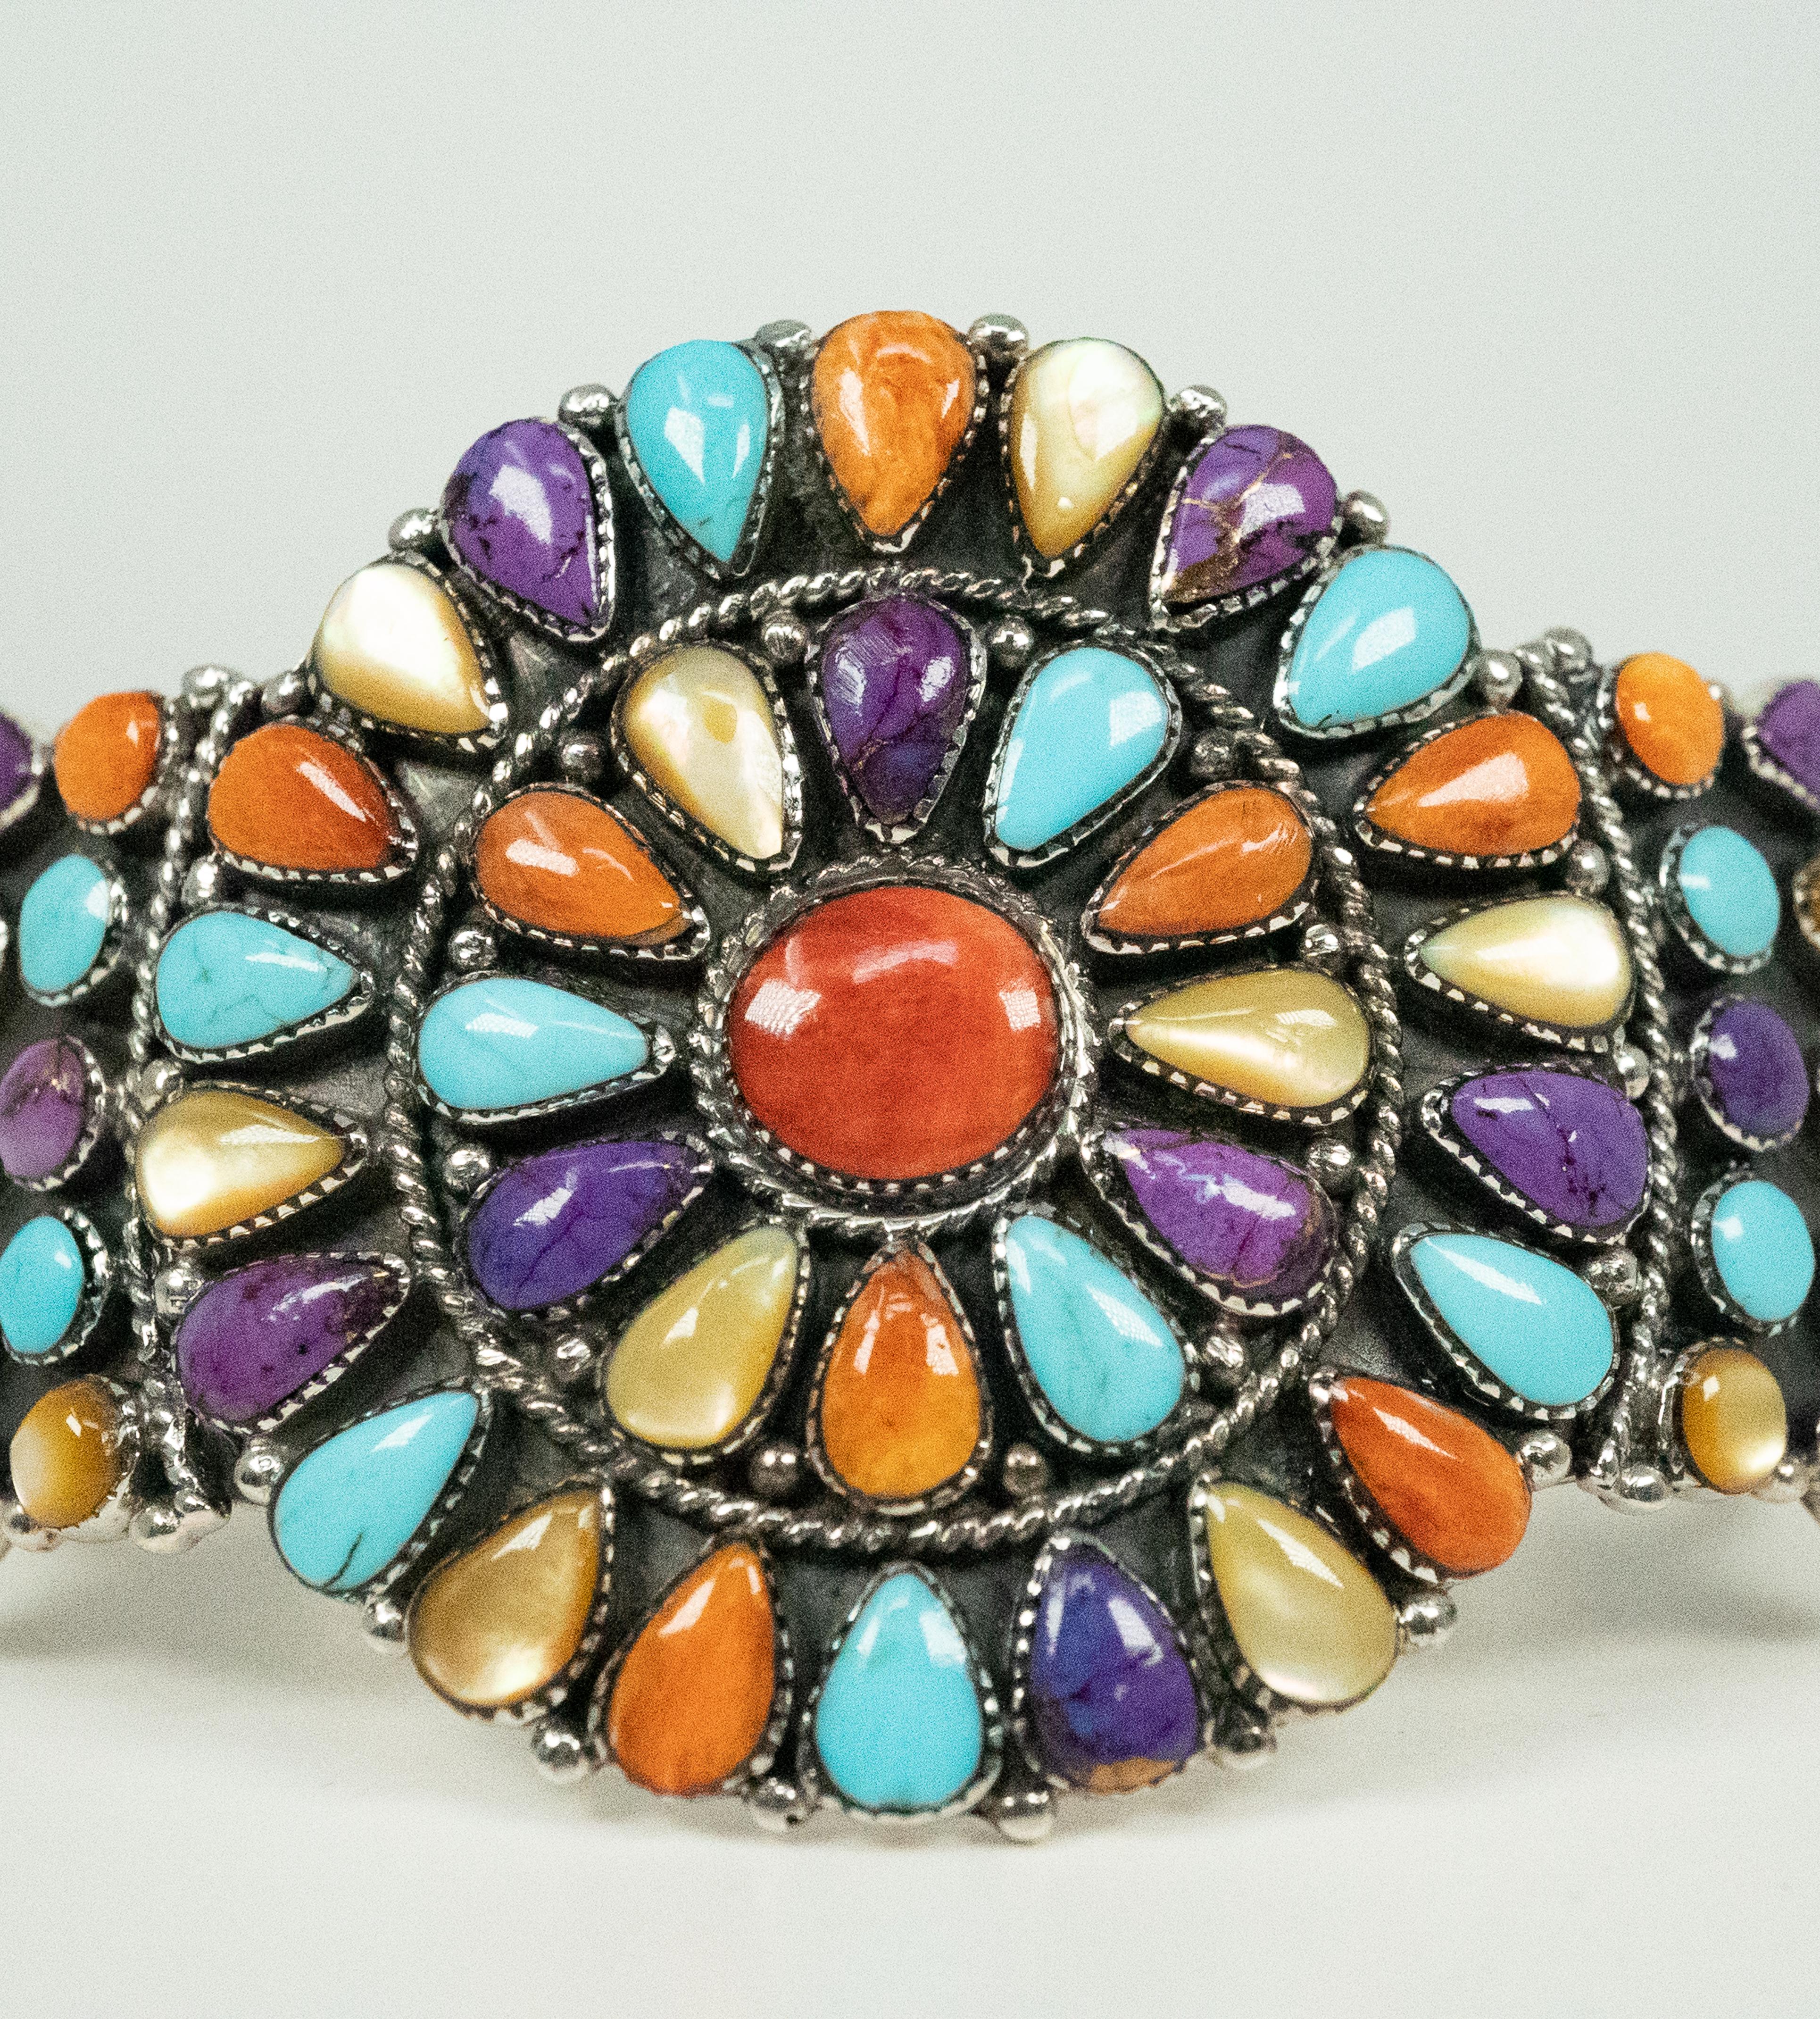 ¡Esta impresionante pulsera brazalete de plata de ley presenta hermosos corales, turquesas y piedras duras!